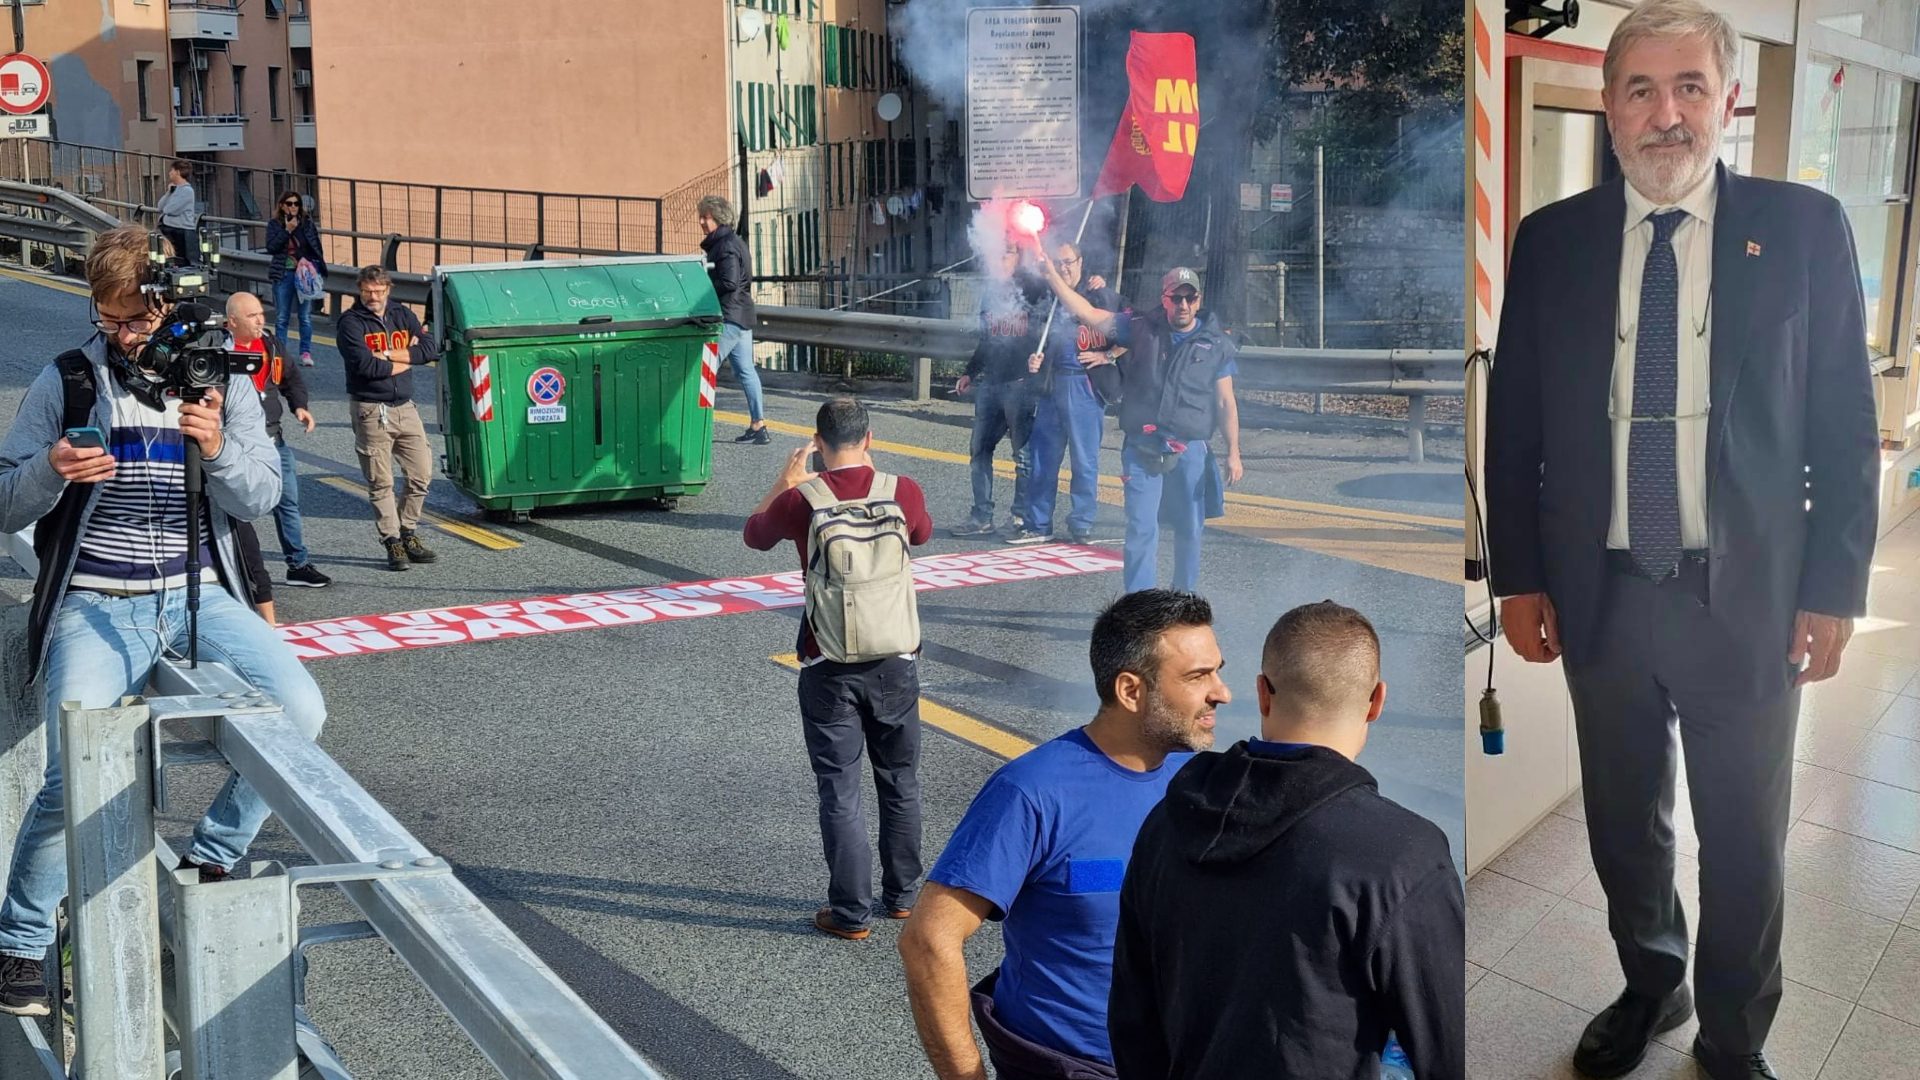 Ansaldo Energia, Bucci: "Vicino ai lavoratori, ma il blocco stradale sta procurando danni alla città"